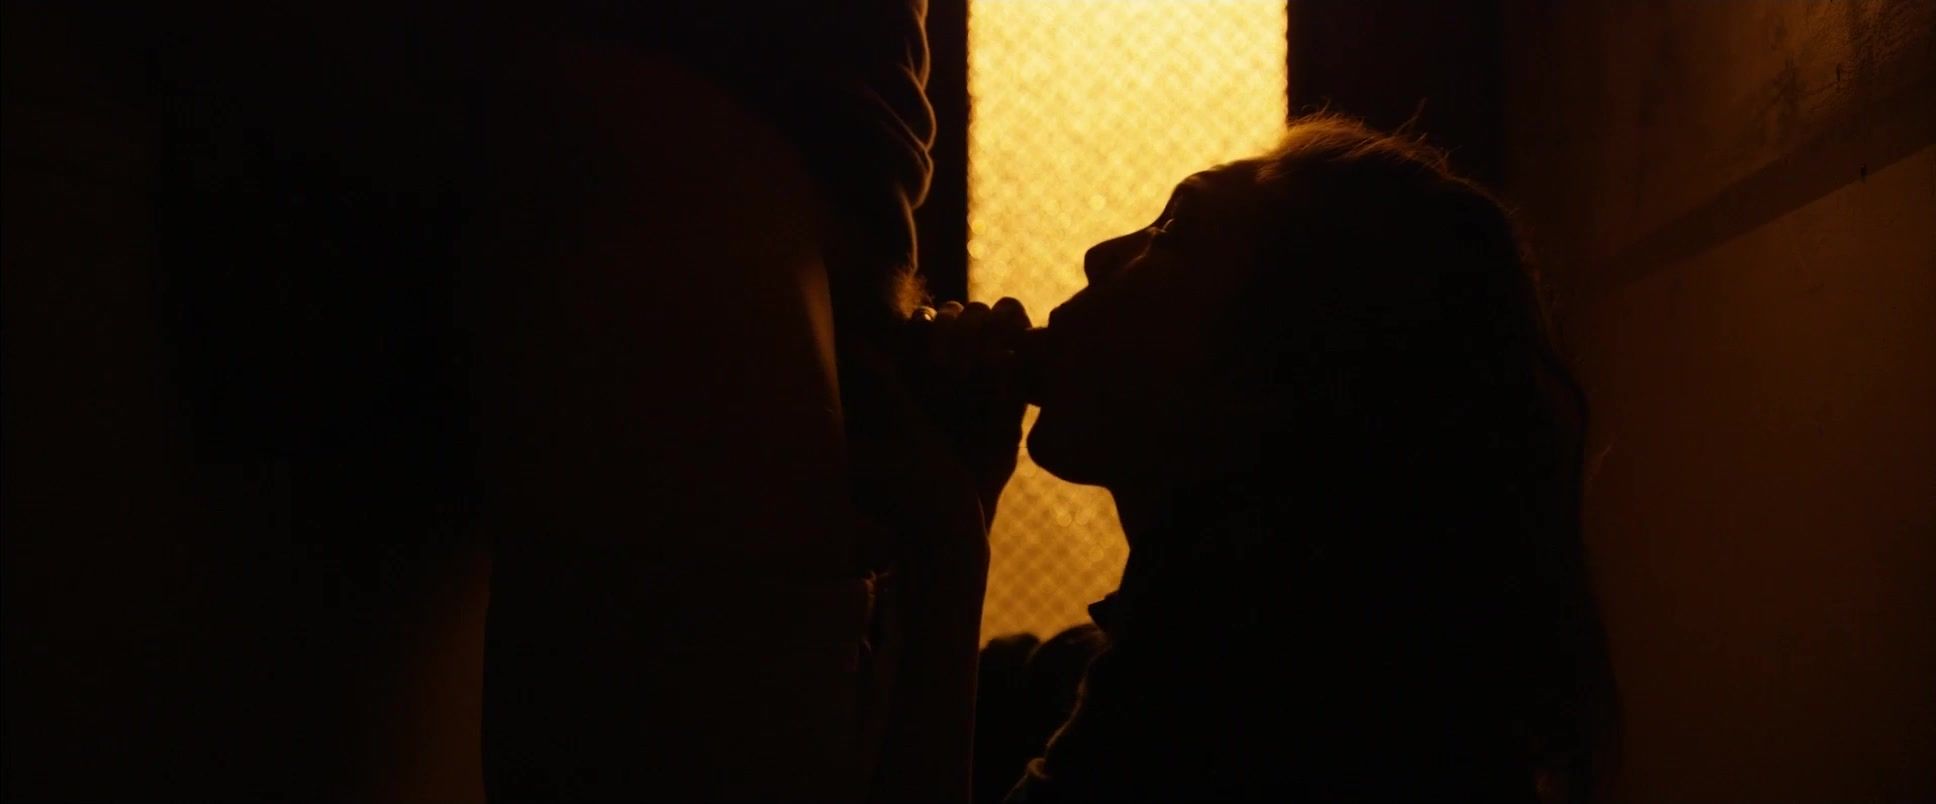 OlderTube Best Mainstream Adult Film | Explicit Uncensored Sex Scenes of the movie "Love" Big Tit Moms